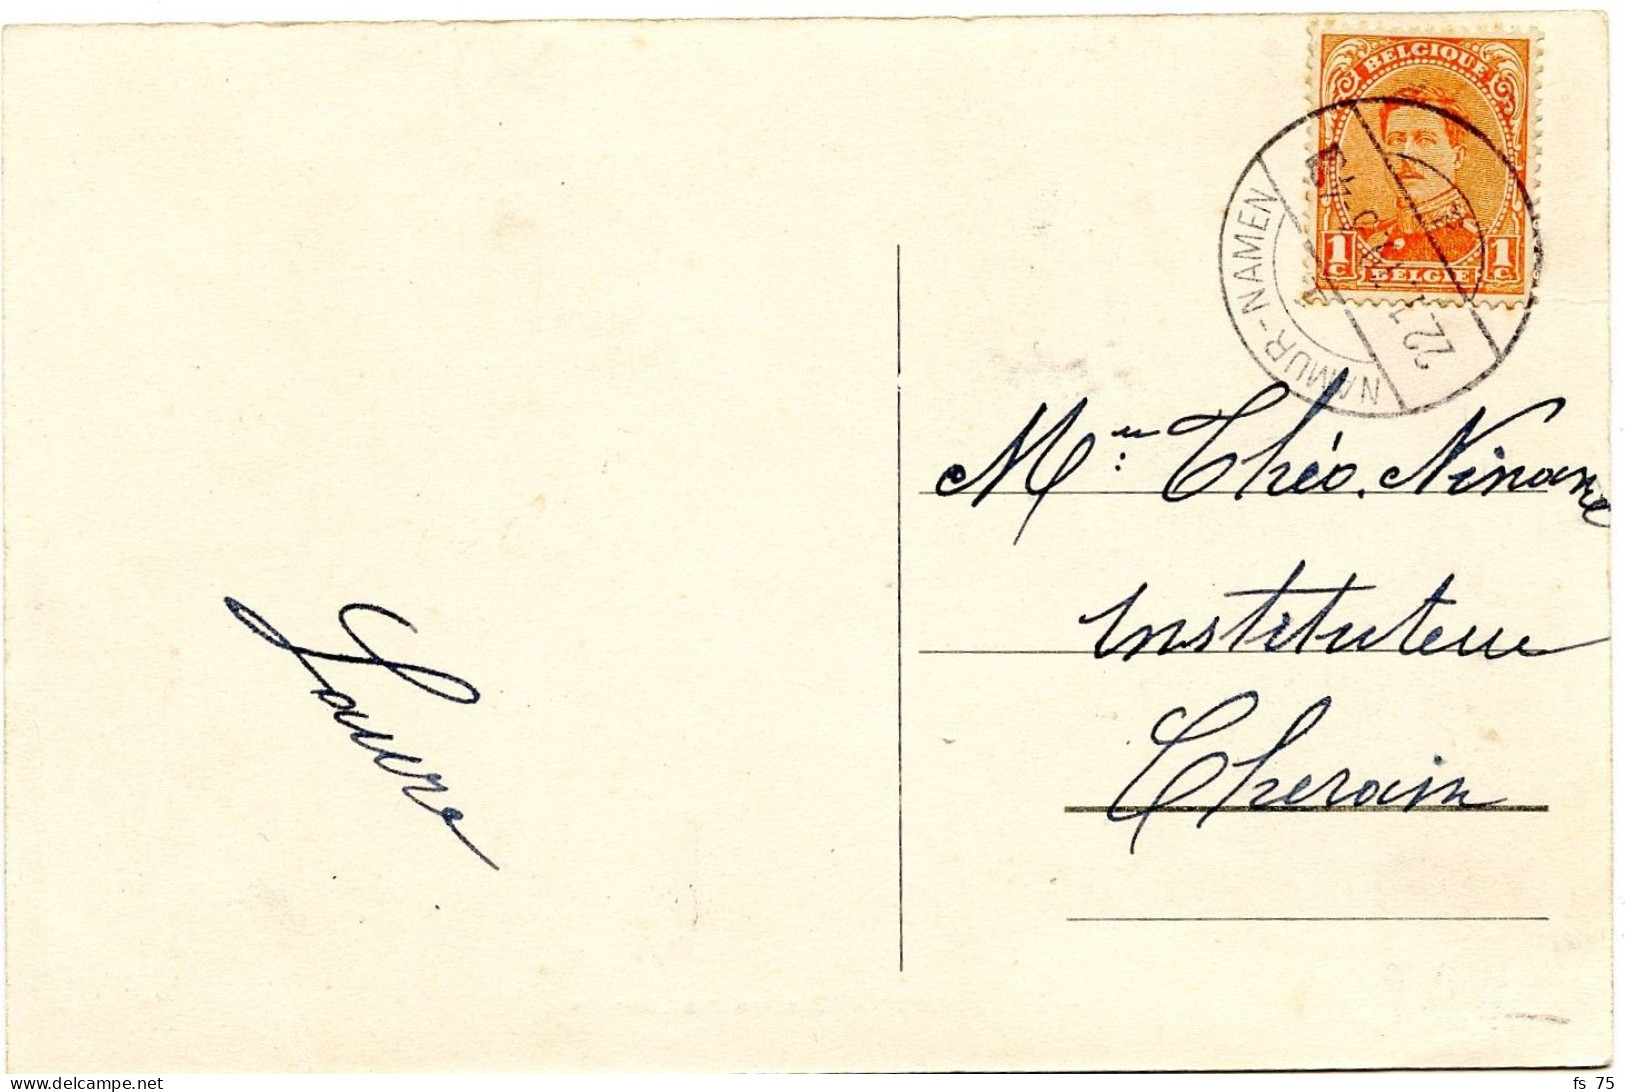 BELGIQUE - COB 135 DOUBLE CERCLE BILINGUE ECHOPPE NAMUR - NAMEN SUR CARTE POSTALE, 1919 - Briefe U. Dokumente